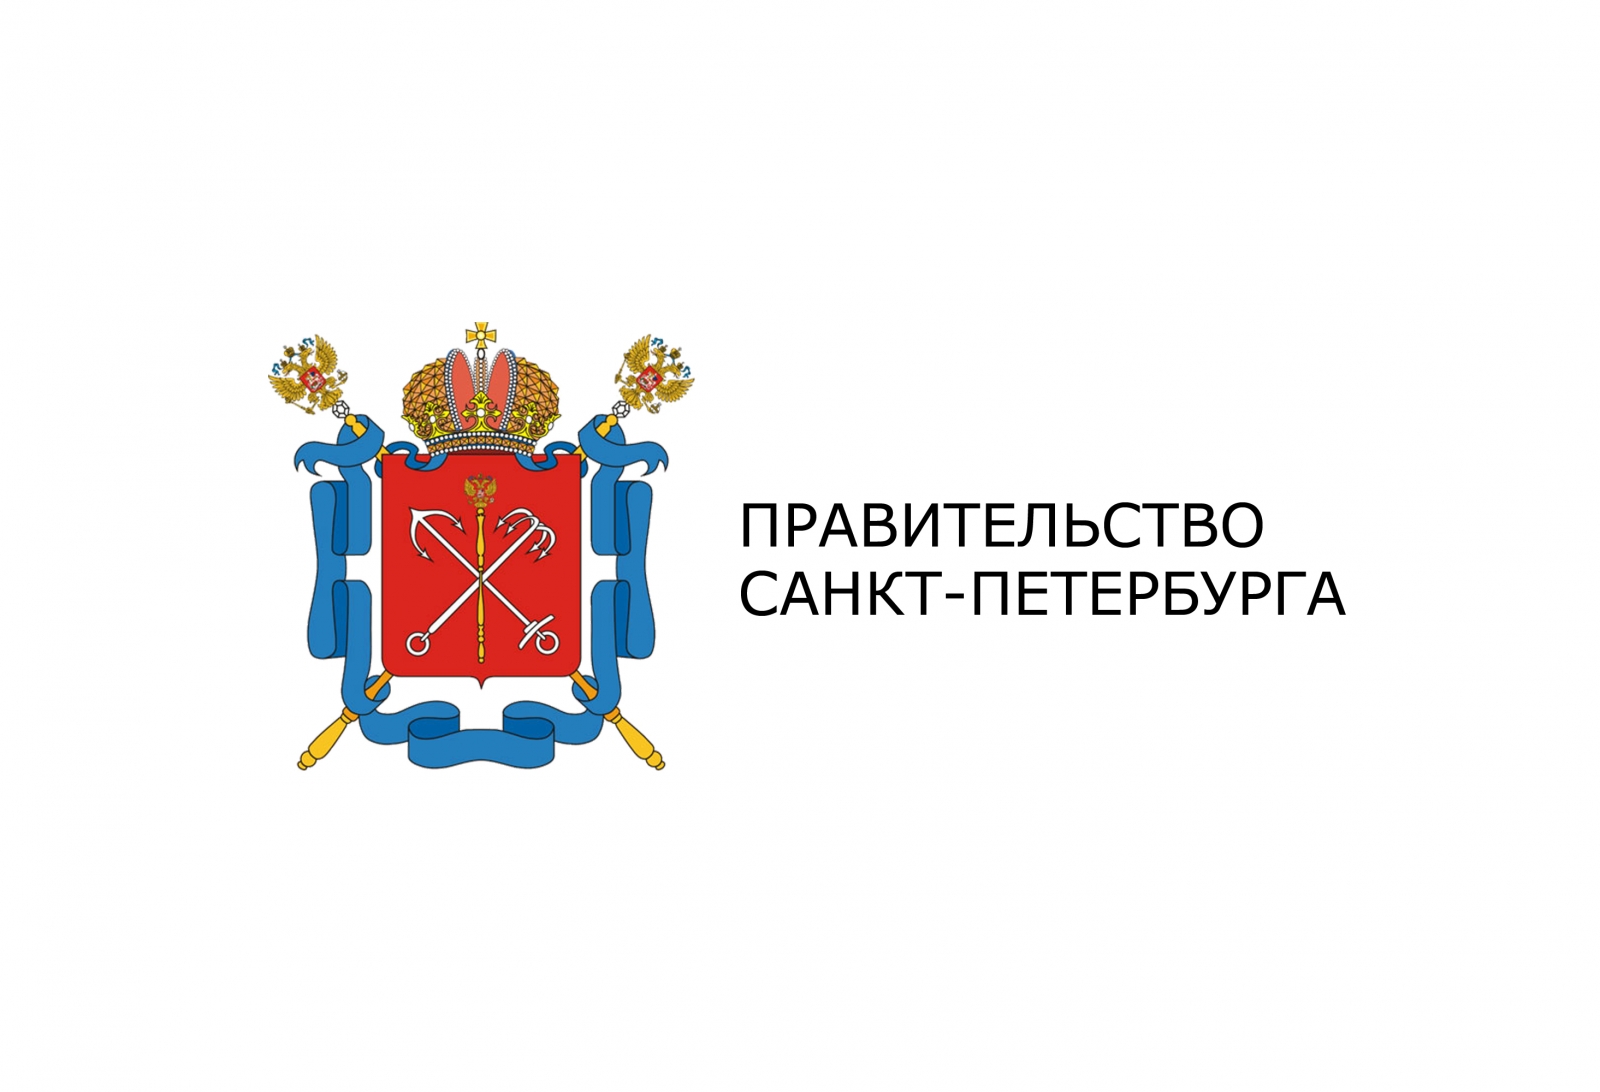 Конкурс на получение студентами в 2020/2021 учебном году именных стипендий Правительства Санкт-Петербурга